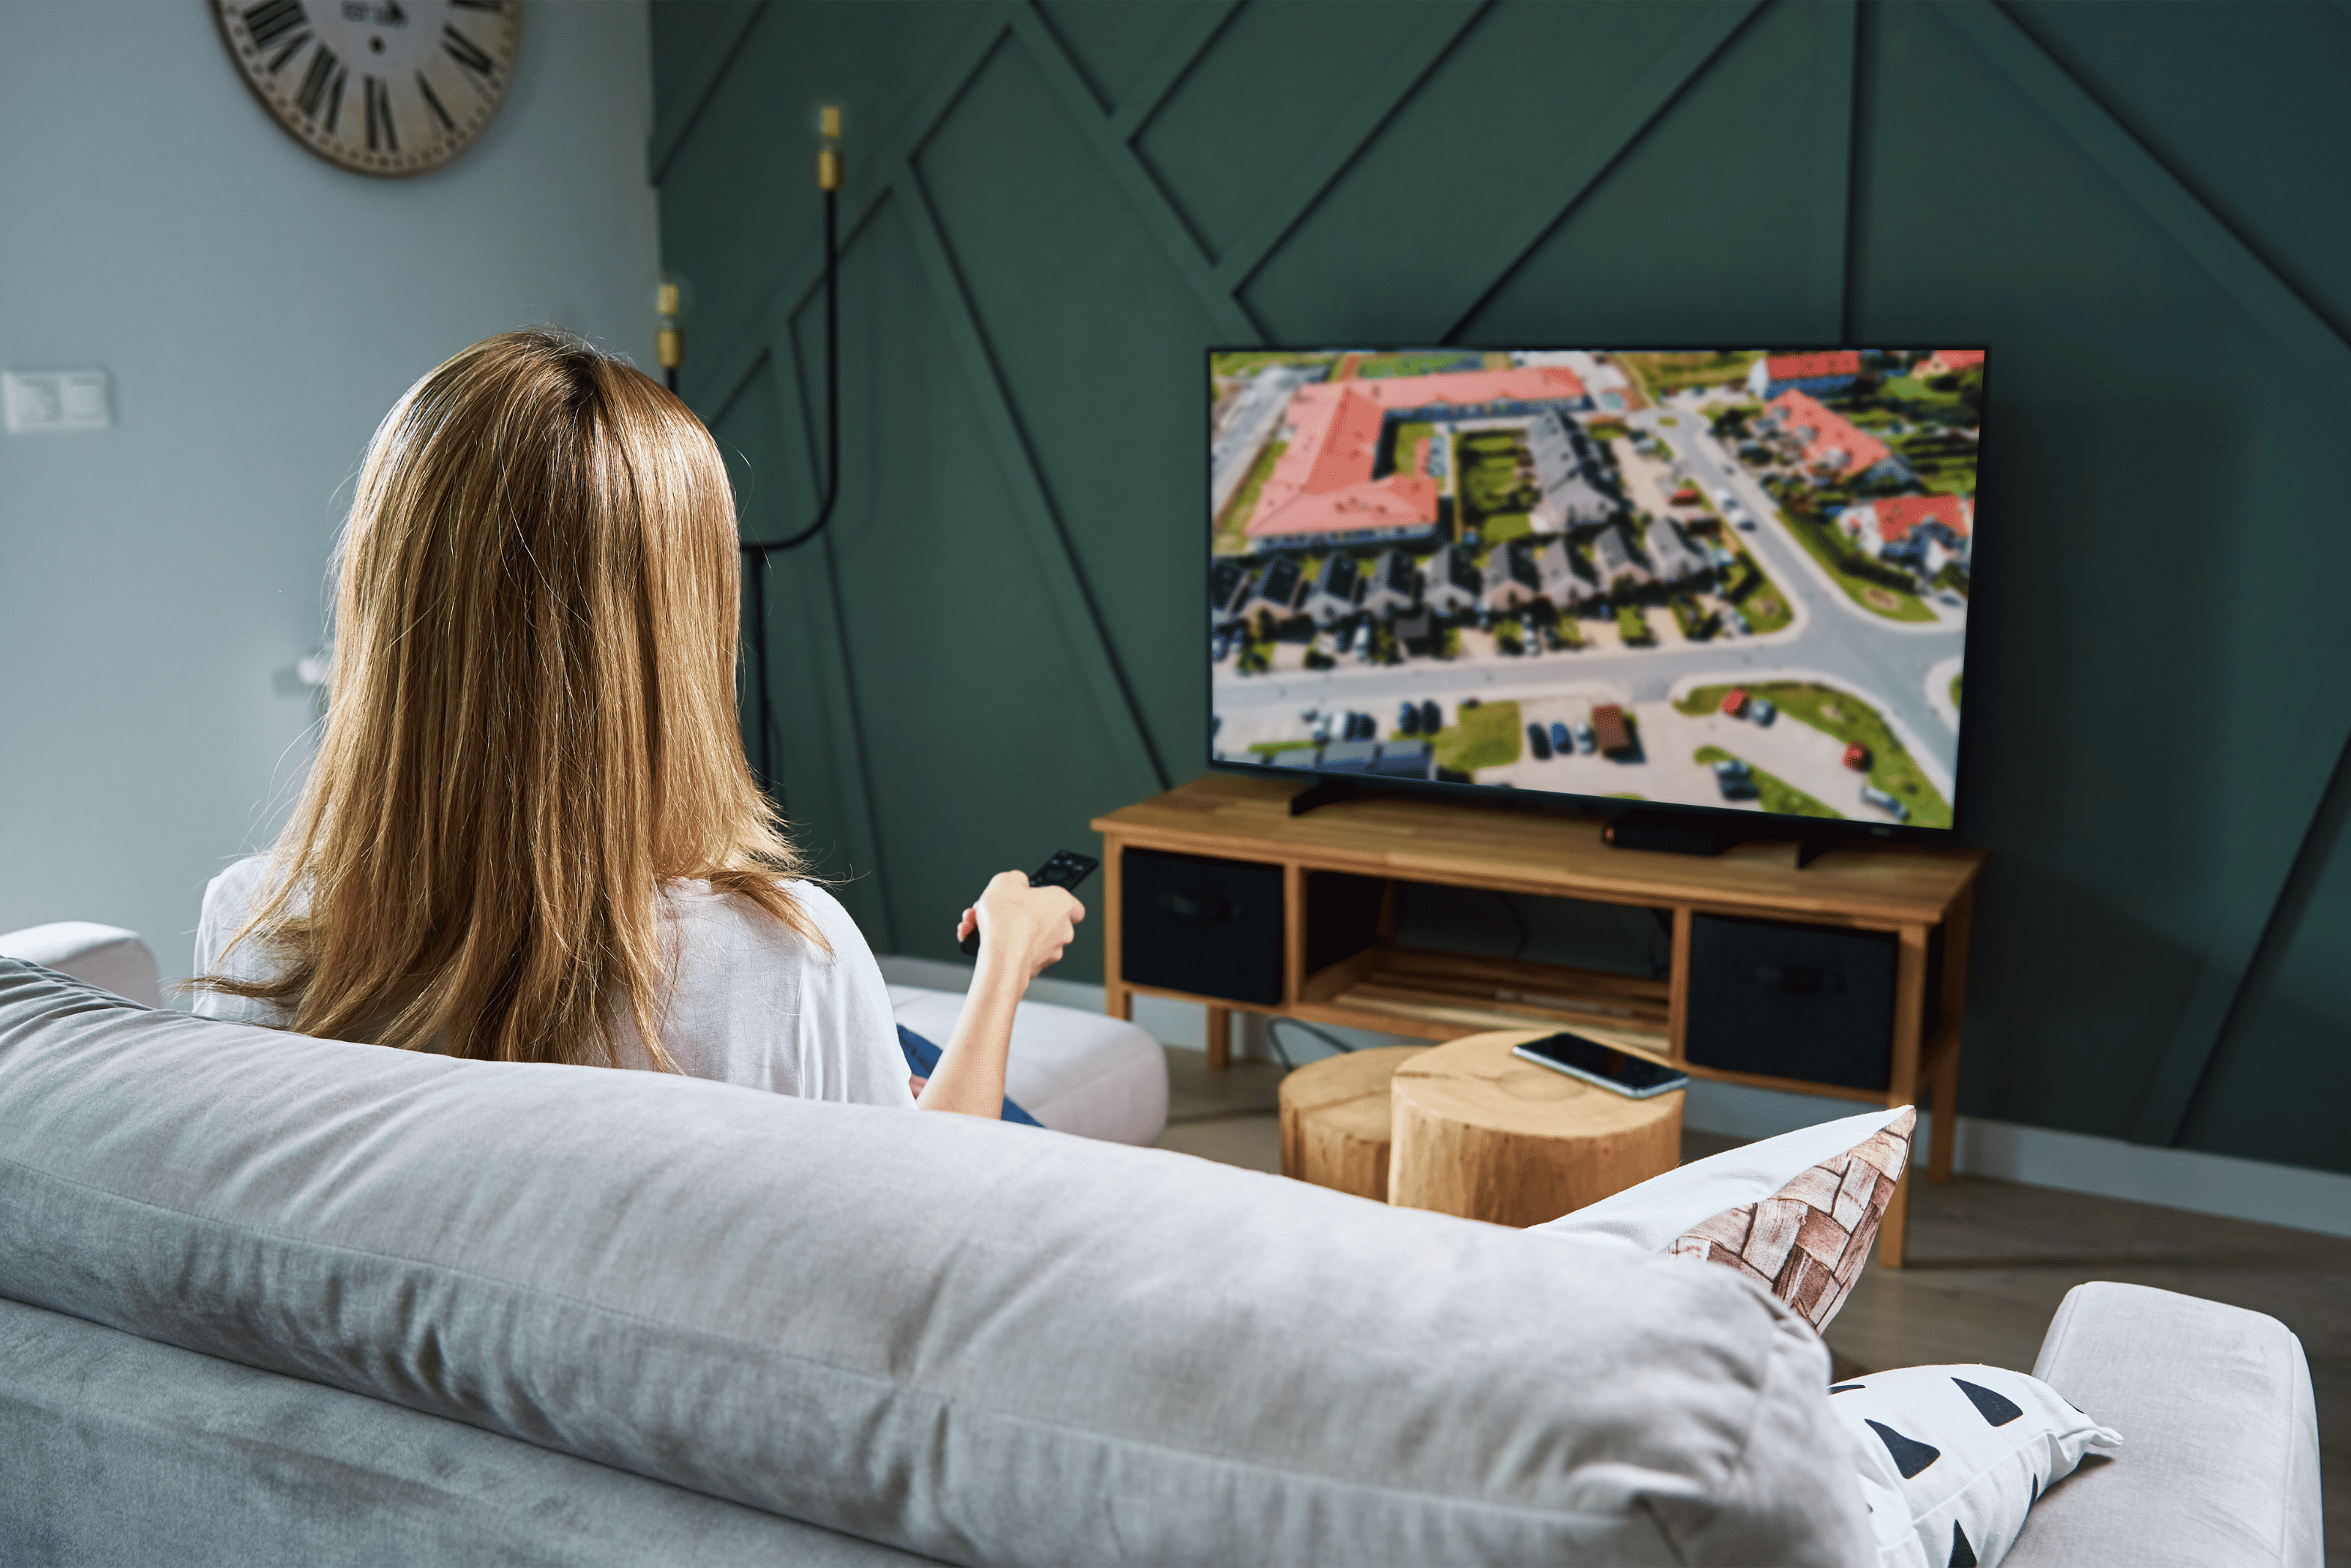 Co to jest Smart TV? Wybierz telewizor z dostępem do internetu